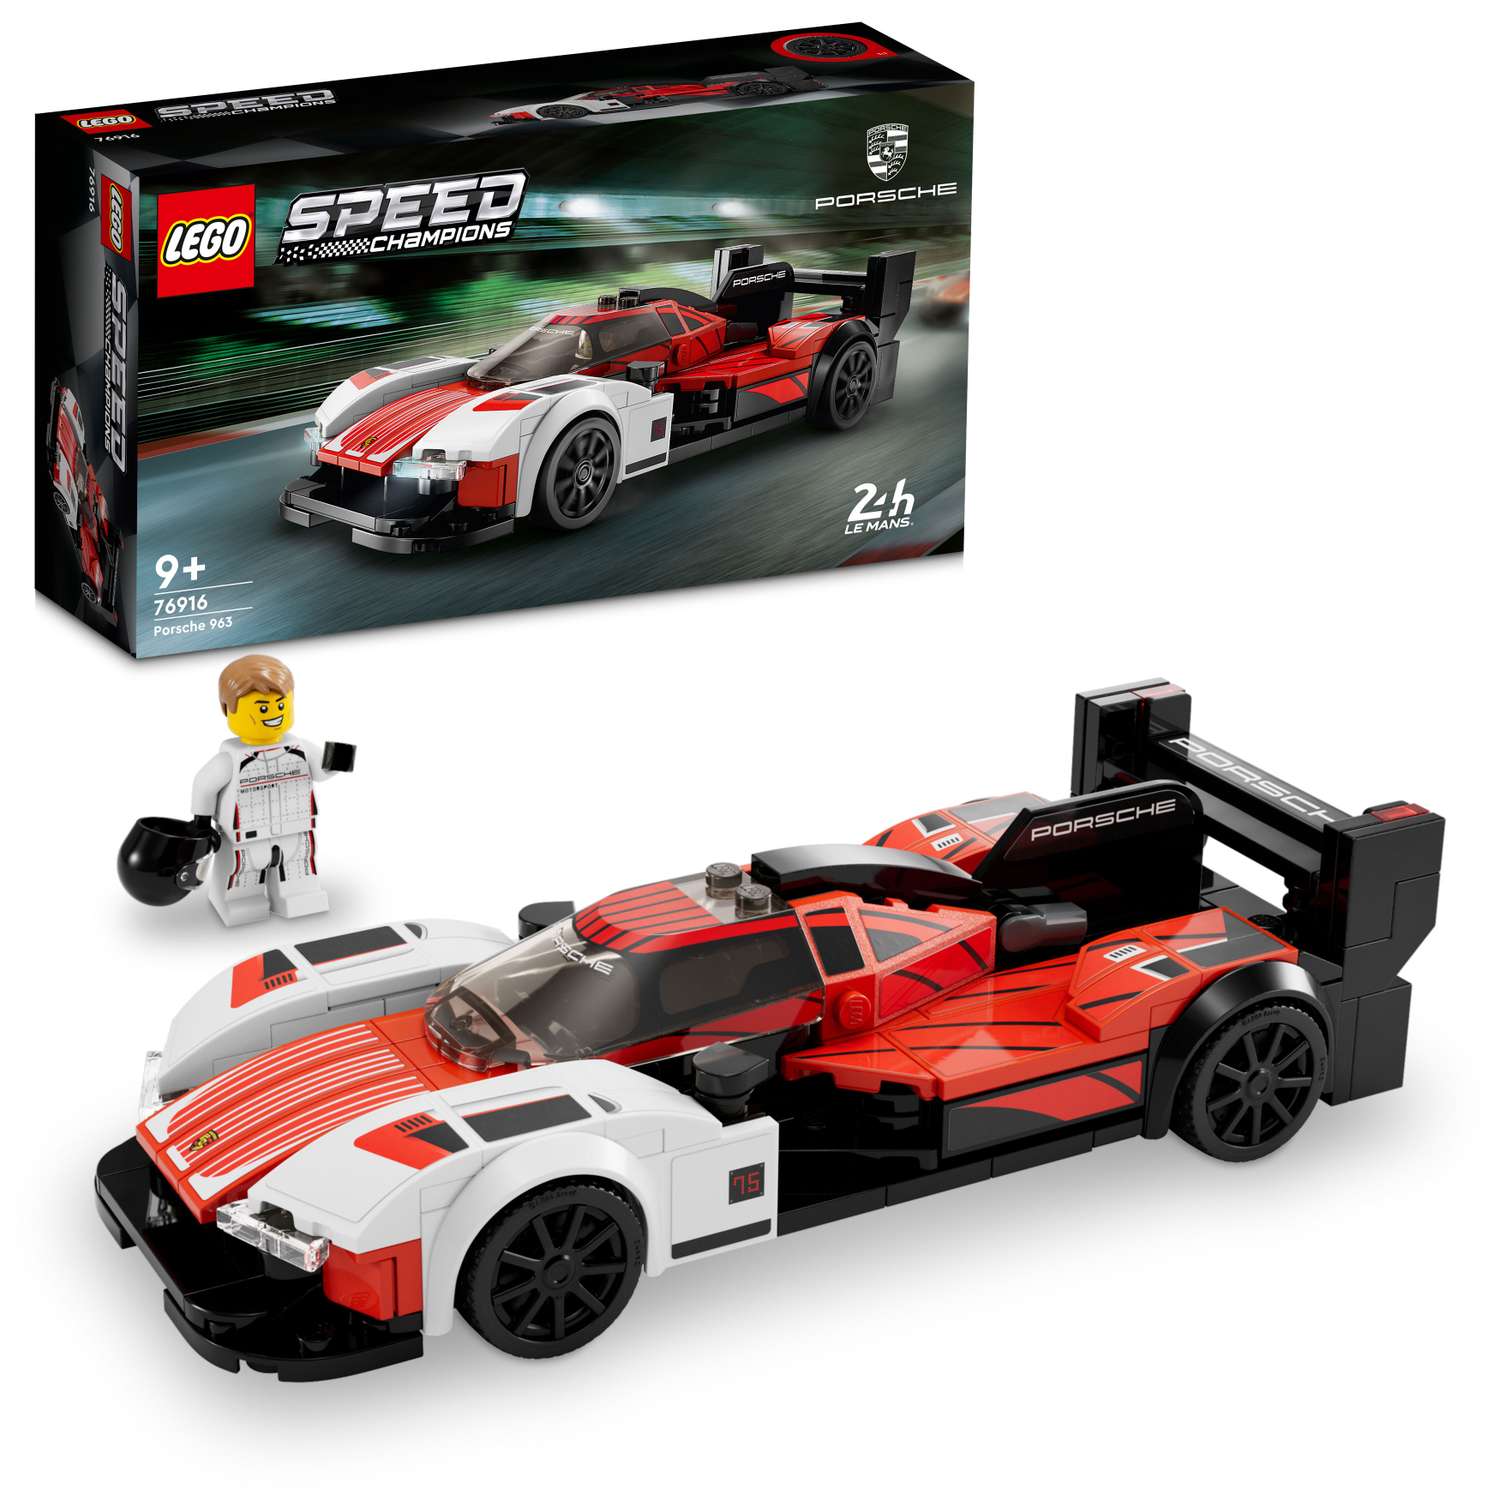 Конструктор LEGO Speed Champions Porsche 963 76916 - фото 1